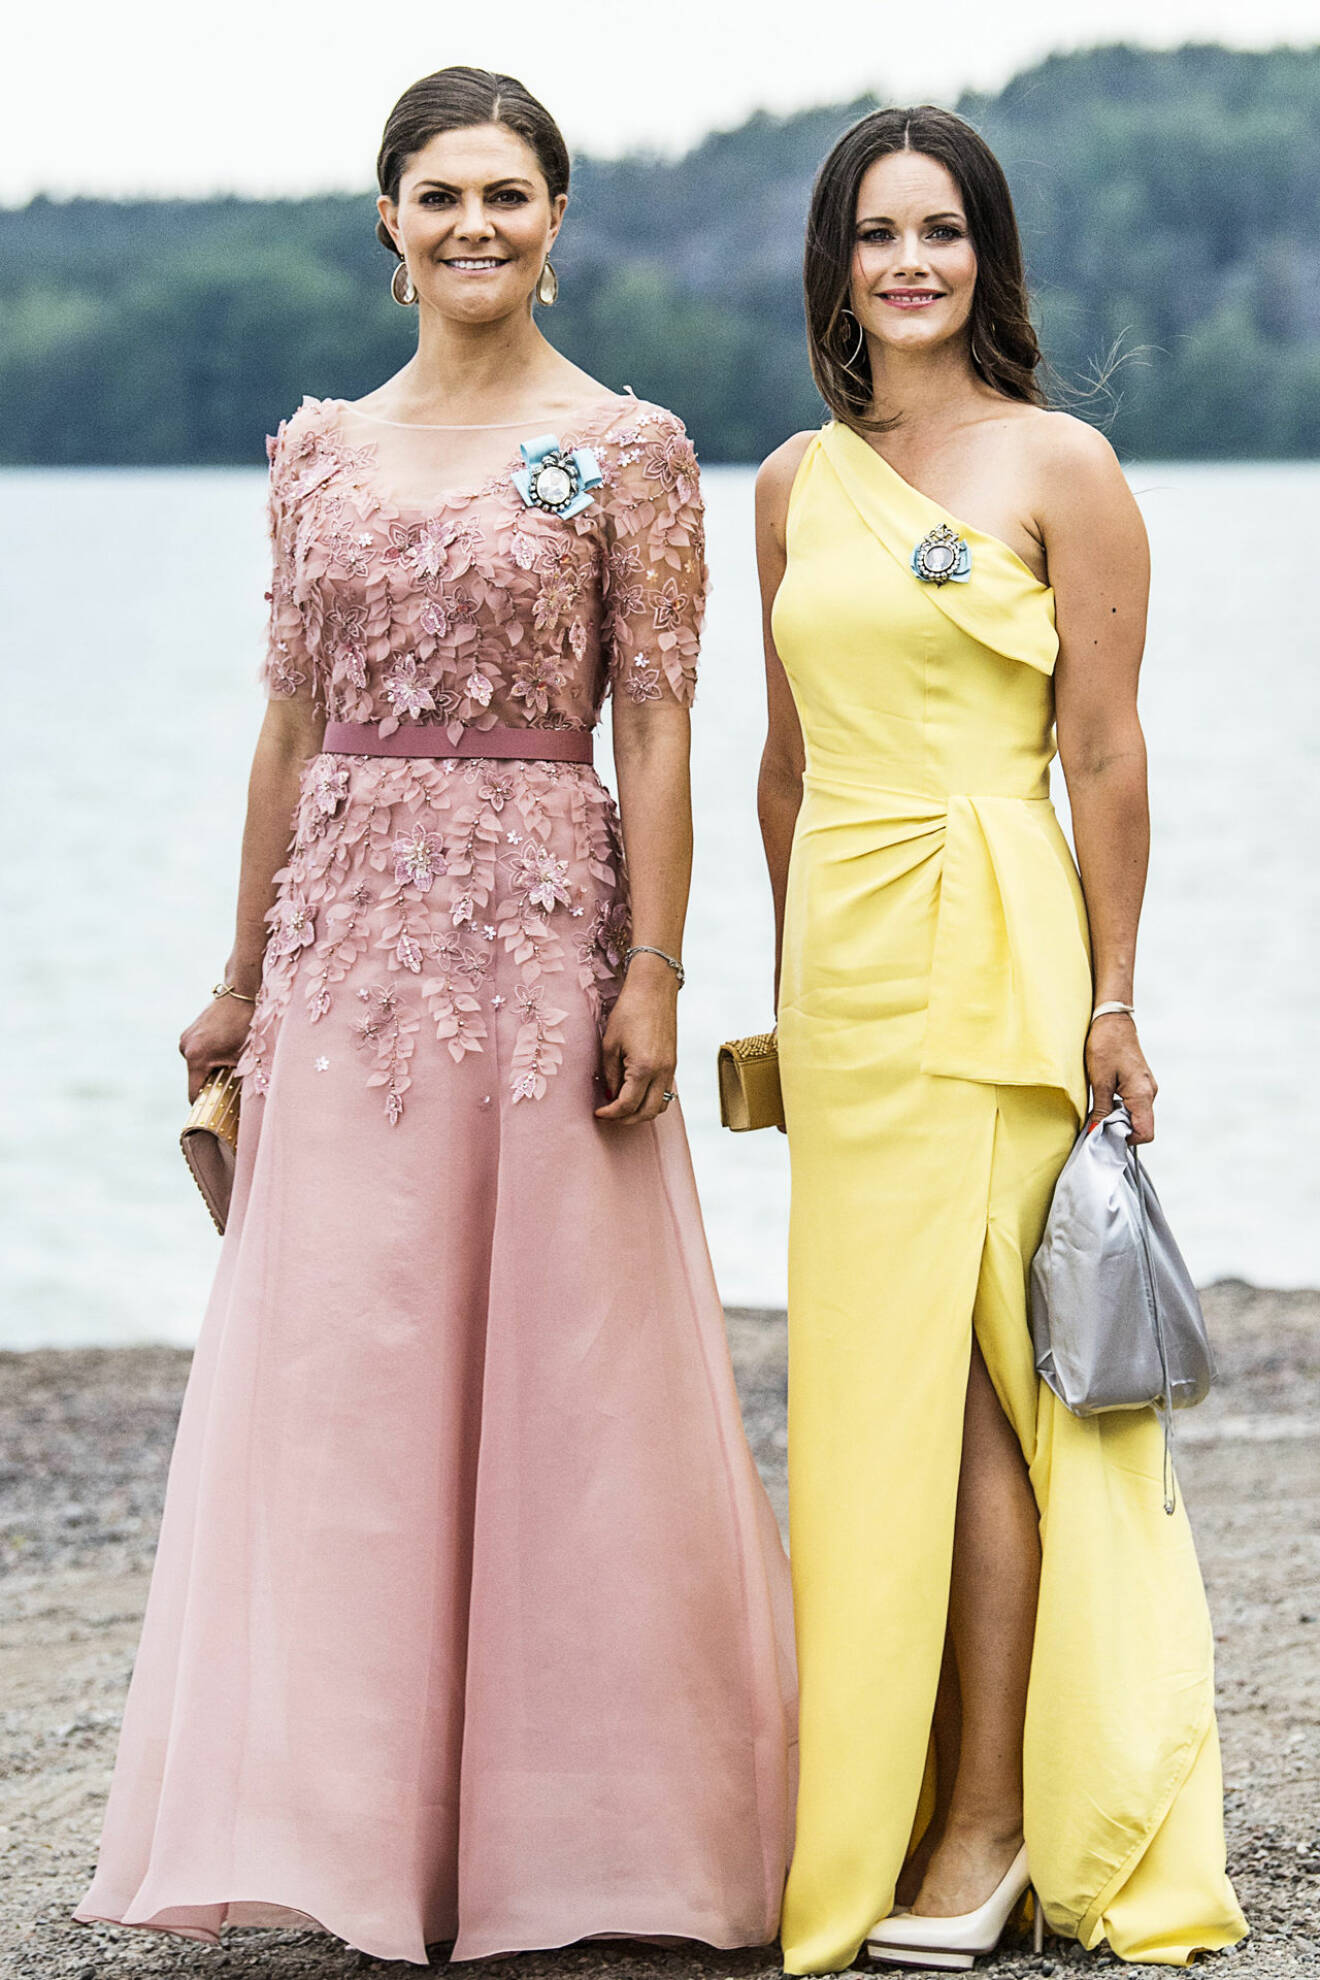 Victoriadagen 2020 - kronprinsessan Victoria och prinsessan Sofia.